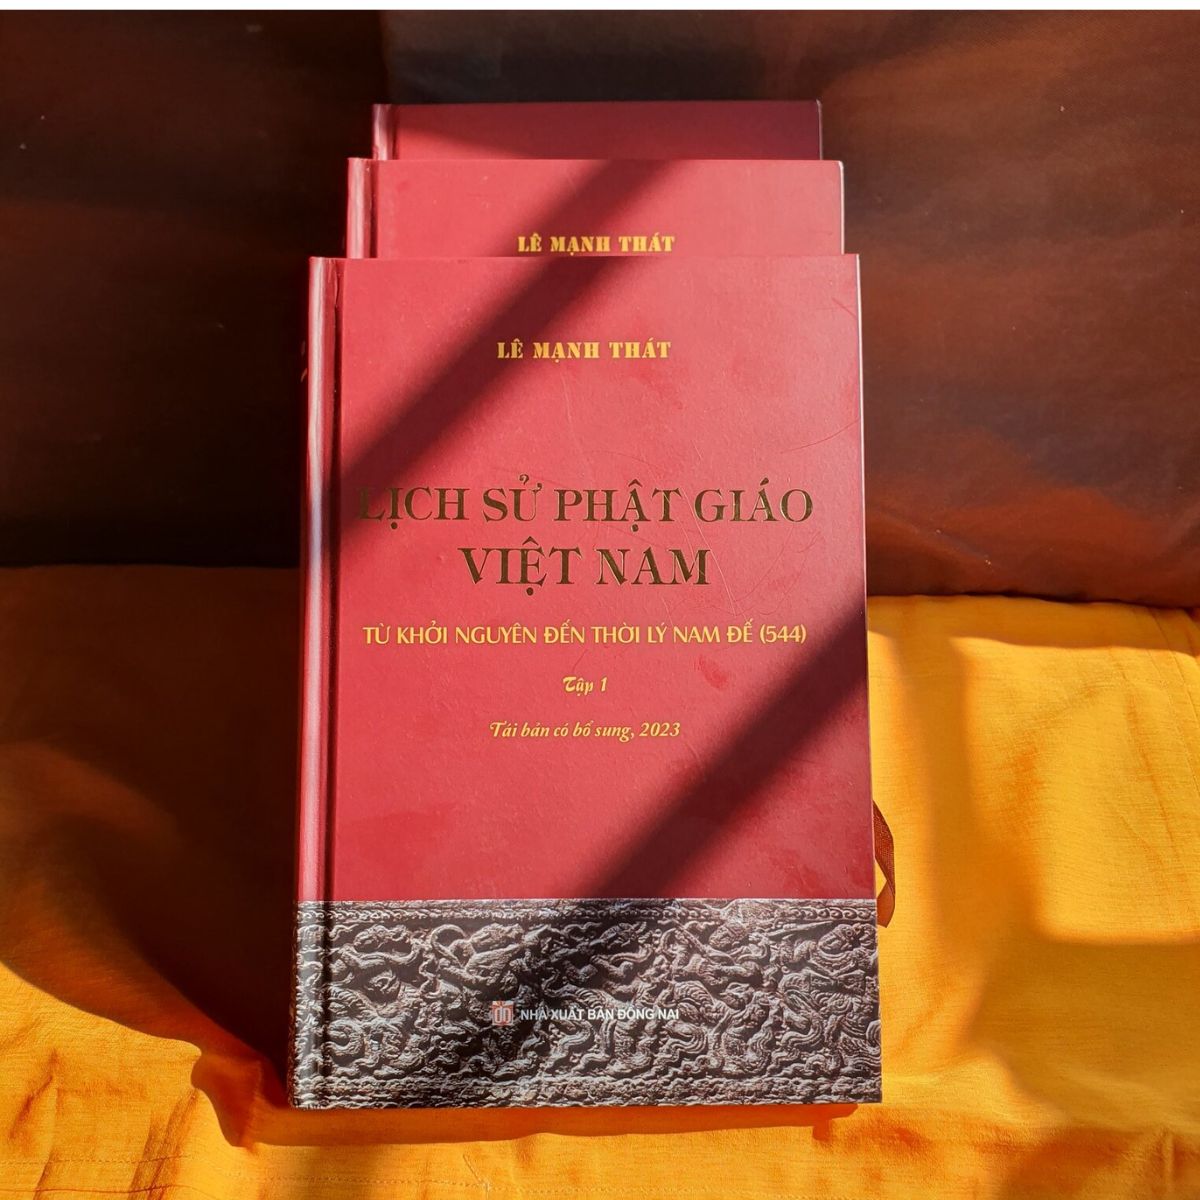 Lịch sử Phật giáo Việt Nam (trọn bộ 3 tập) - GS. Lê Mạnh Thát - Tái bản có bổ sung 2023